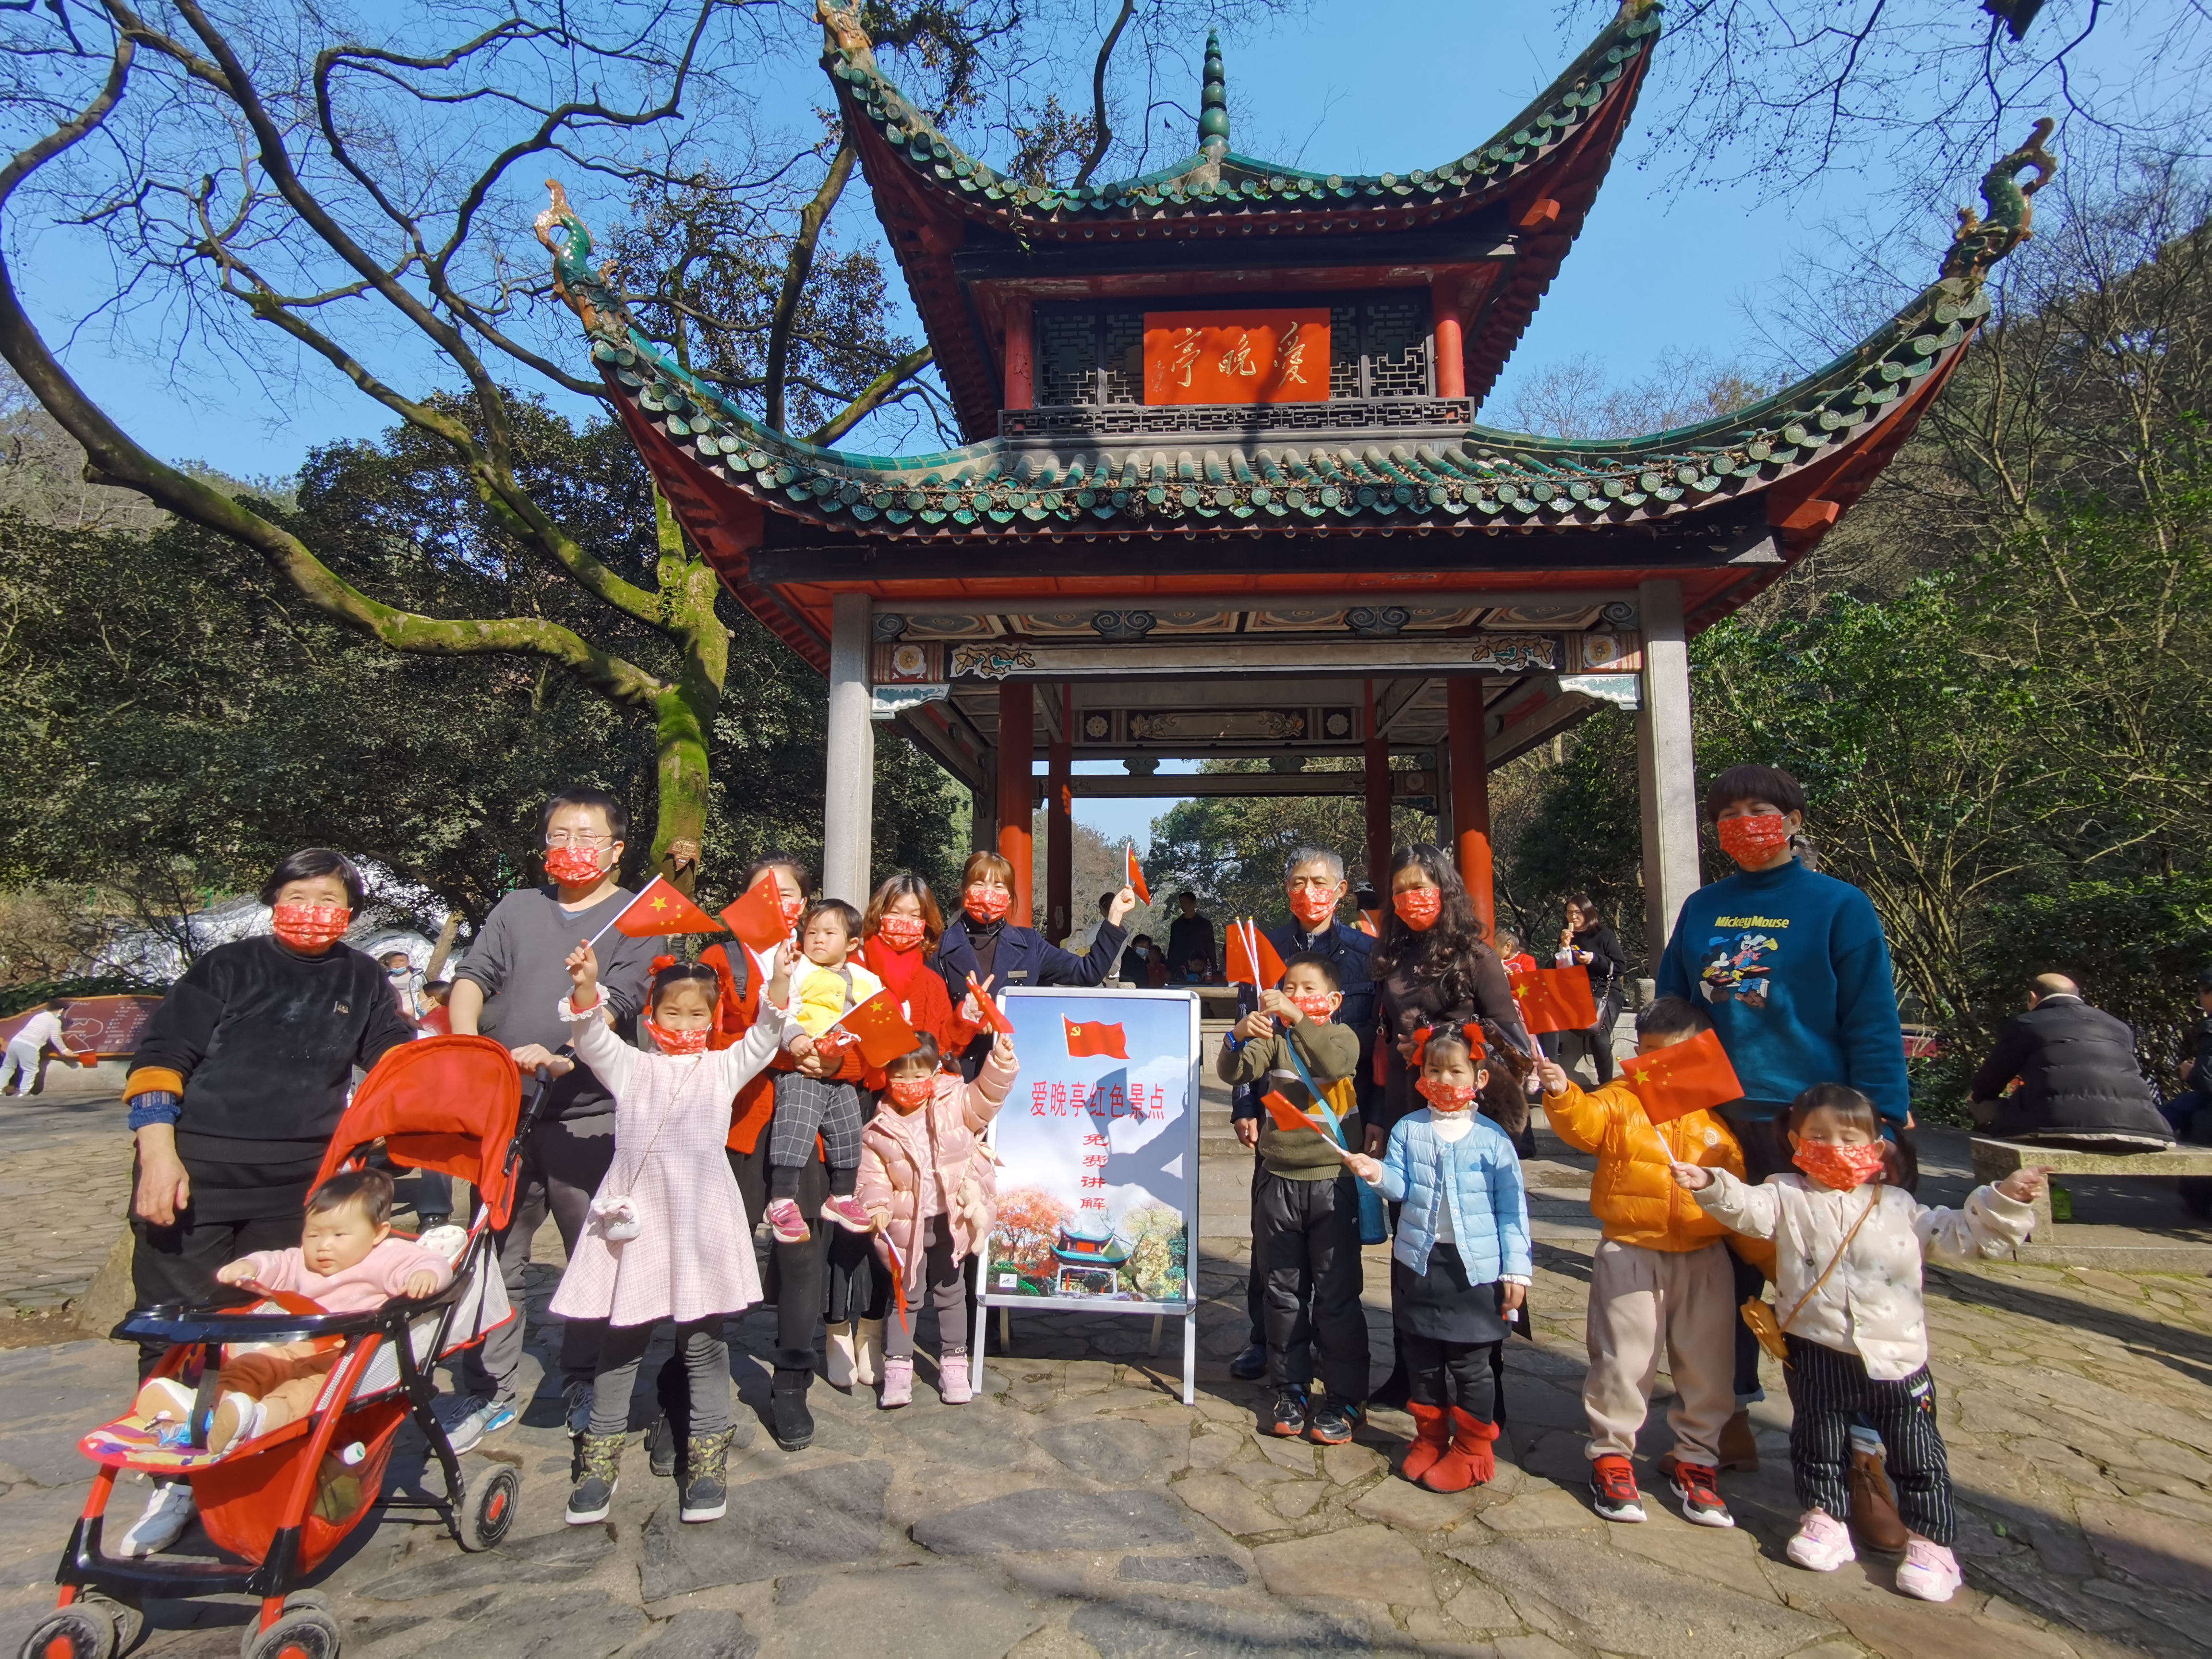 许多“家庭团”、“班级团”纷纷来到爱晚亭前接受红色文化熏陶。